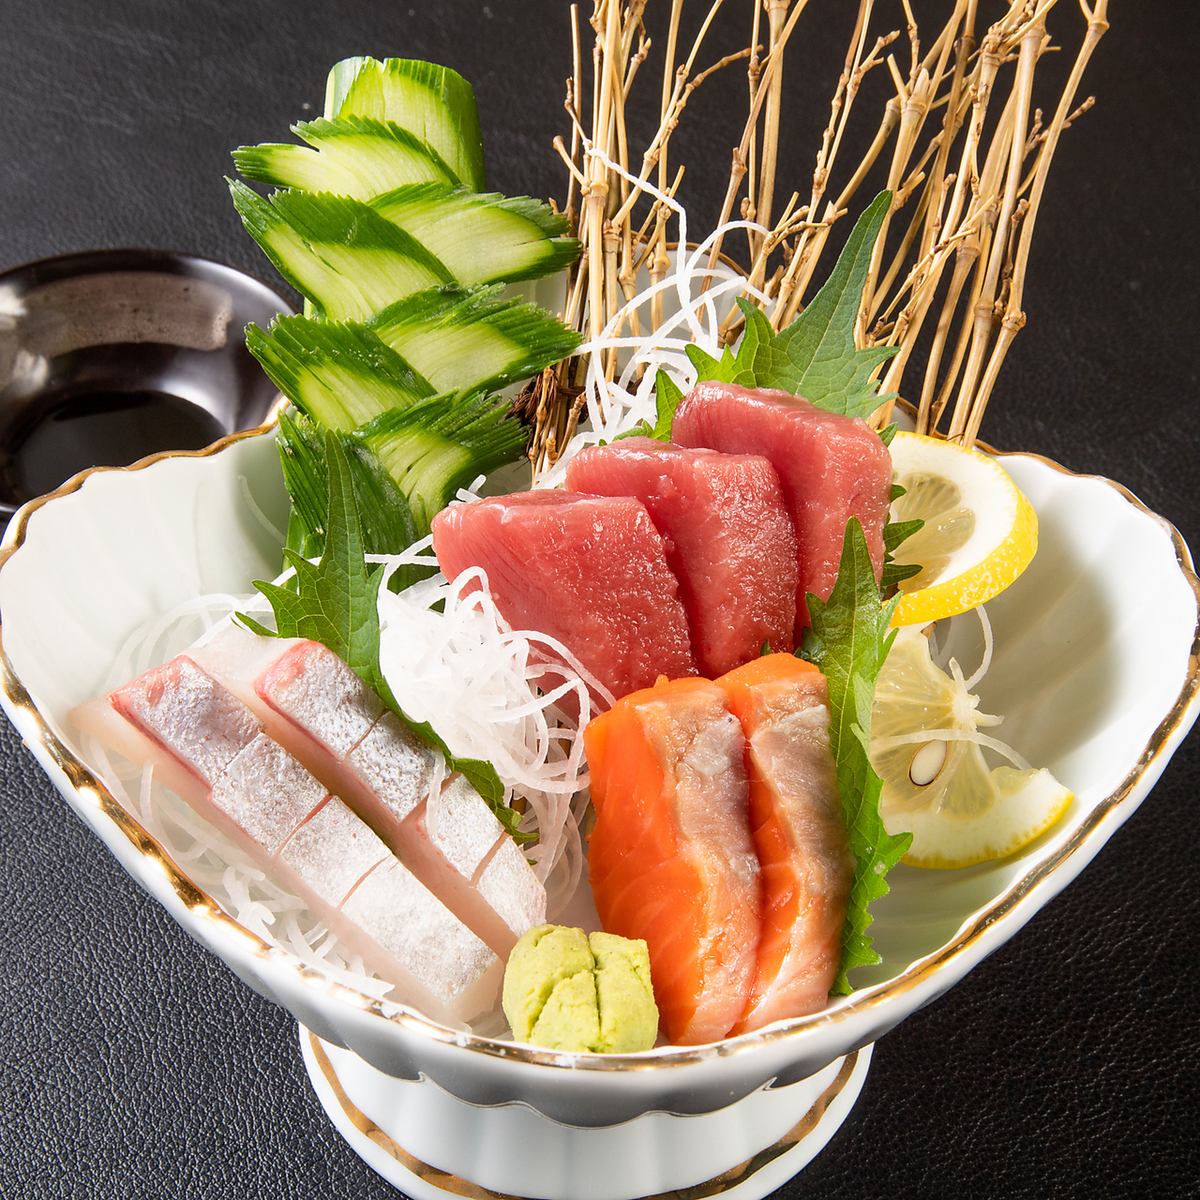 请用生鱼片和寿司享用新鲜捕获的鱼♪